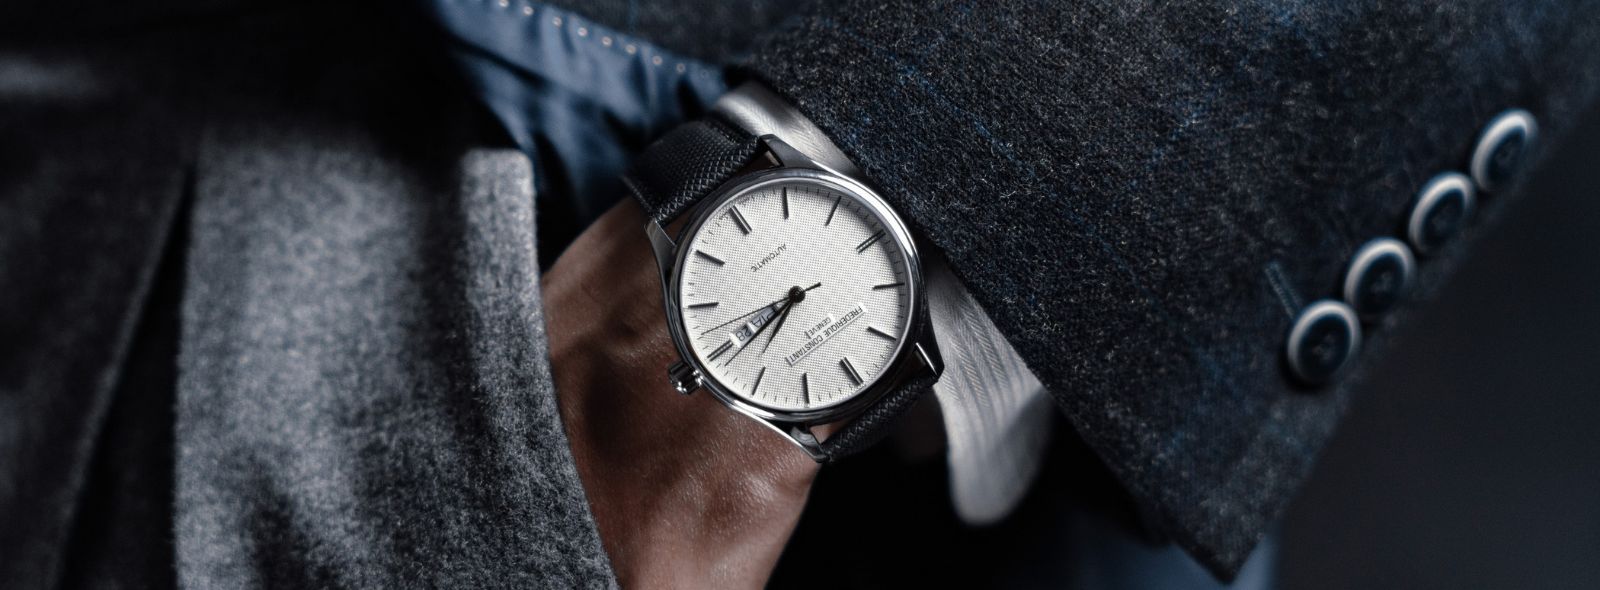 Jaki zegarek jest najdokładniejszy? | Zegarownia.pl Blog